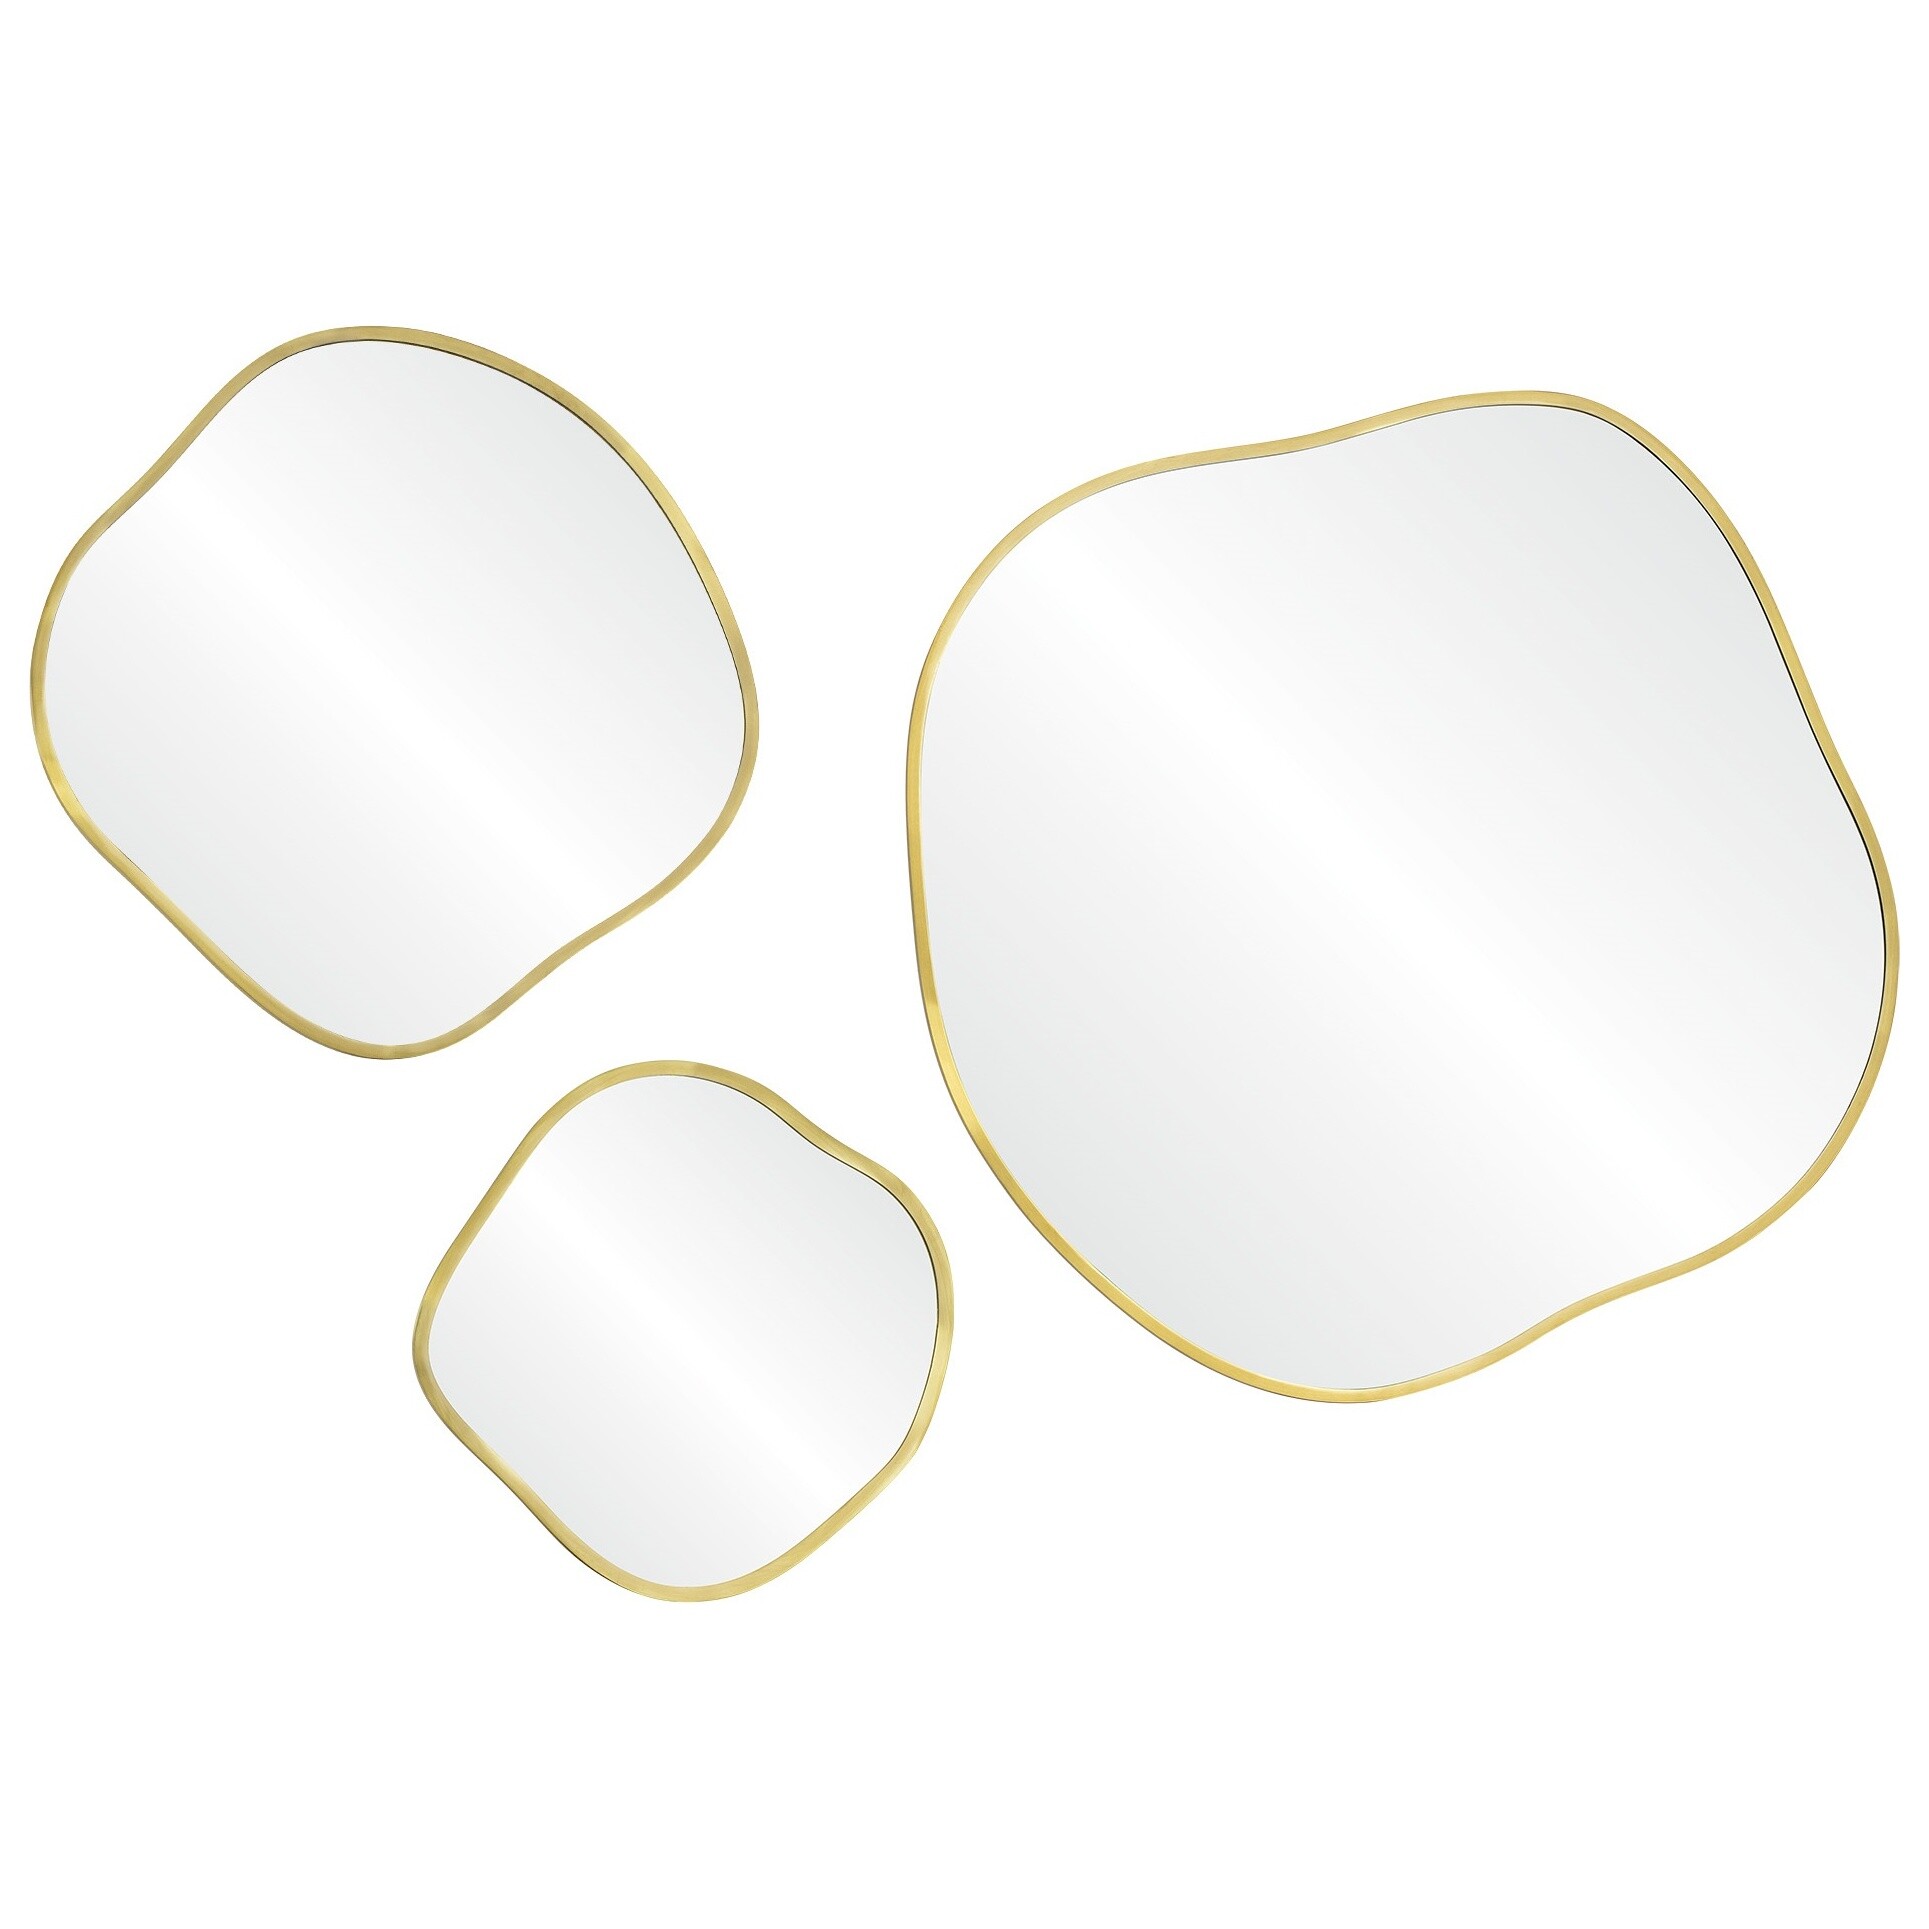 Зеркала настенные фигурные панно 3 шт золото Organic Panno Gold